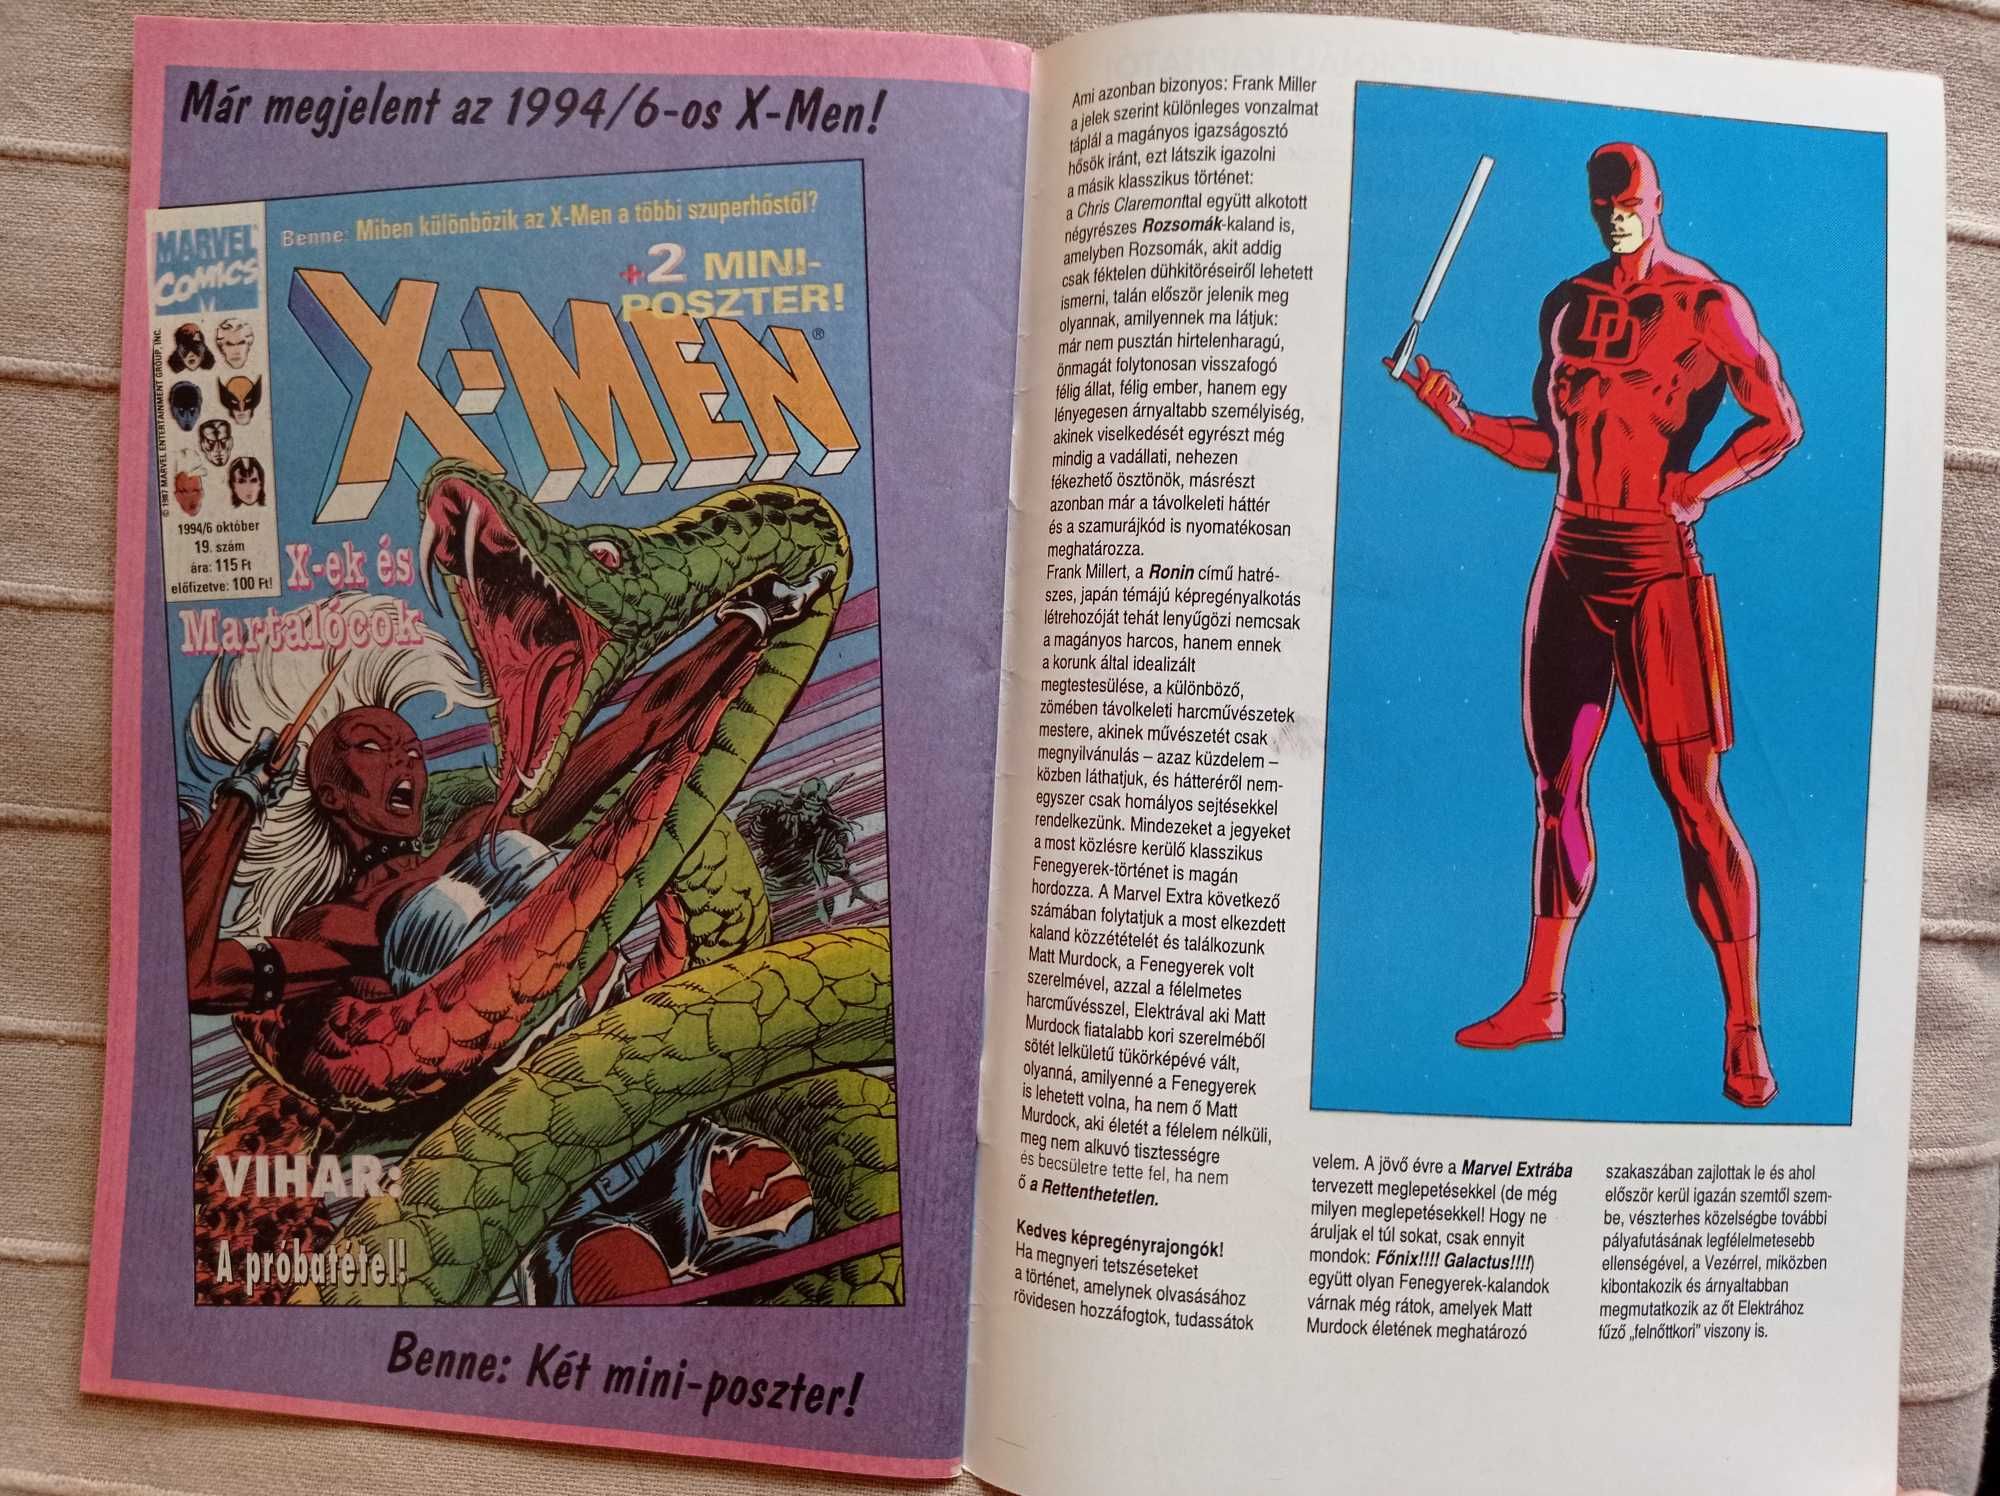 Marvel Extra nr 11 Pokember nr 9 1994 Spider-man Daredevil